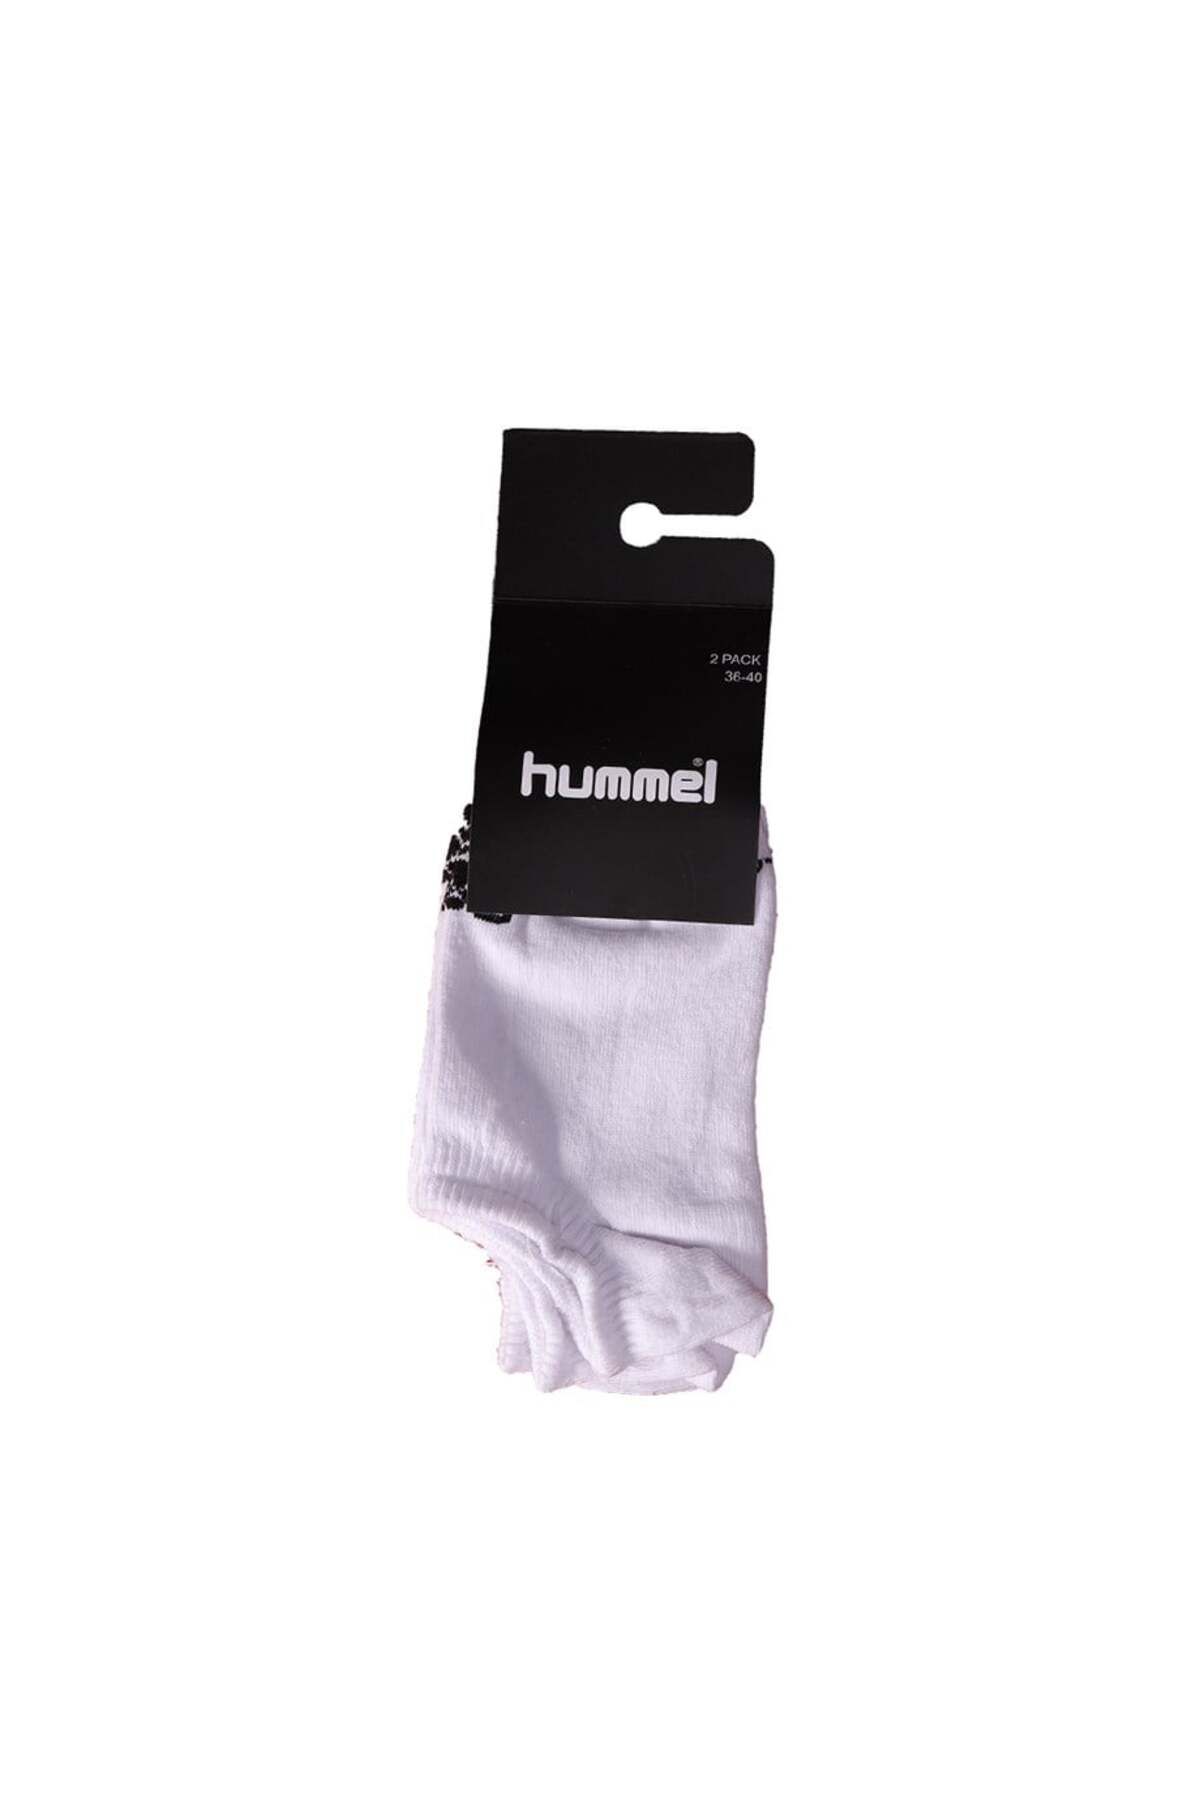 hummel Hmlmını New 2pk Socks Unisex Çorap 970155